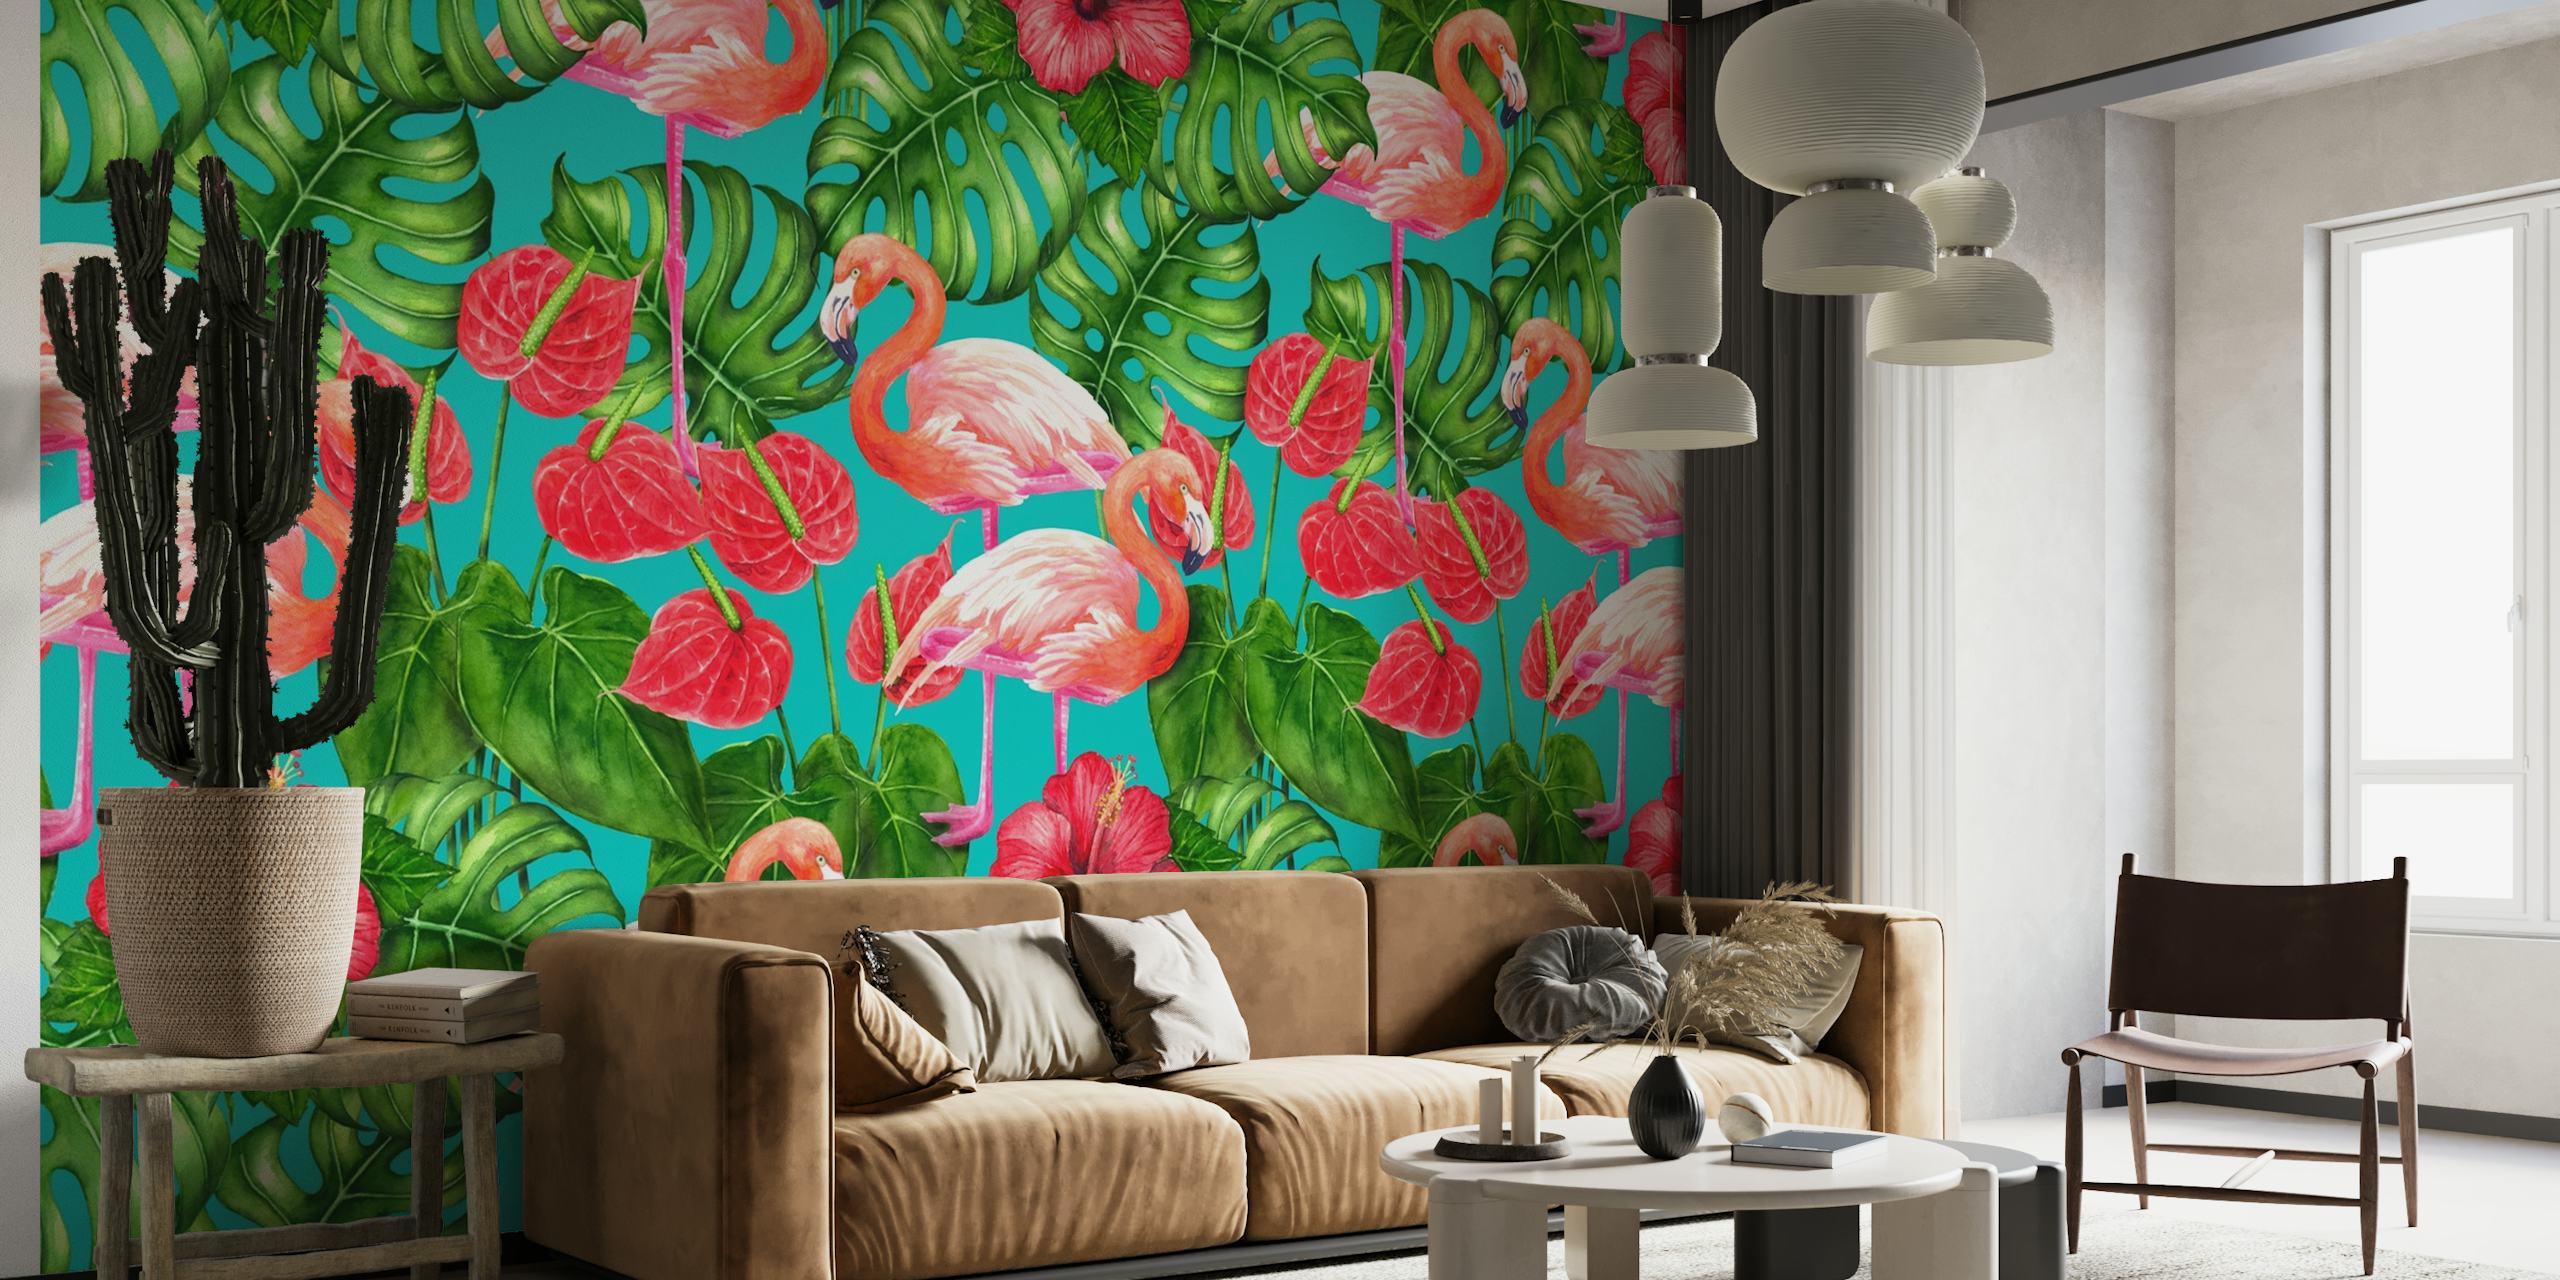 Flamingo and tropical garden papel pintado